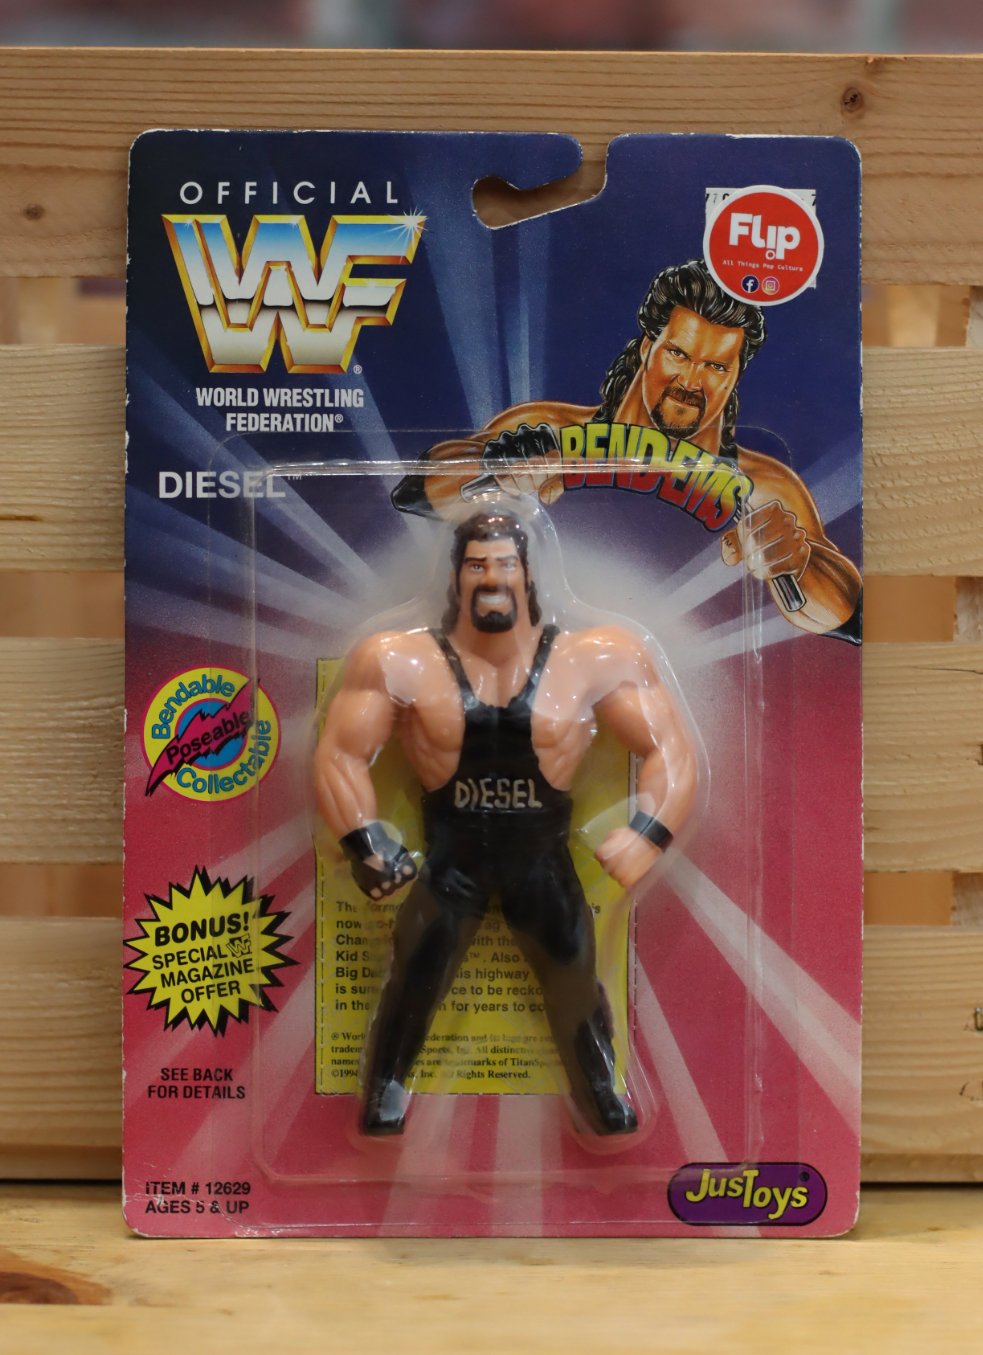 1996 Just Toys WWF Factory Sealed Diesel Bend Ems Wrestling Figure